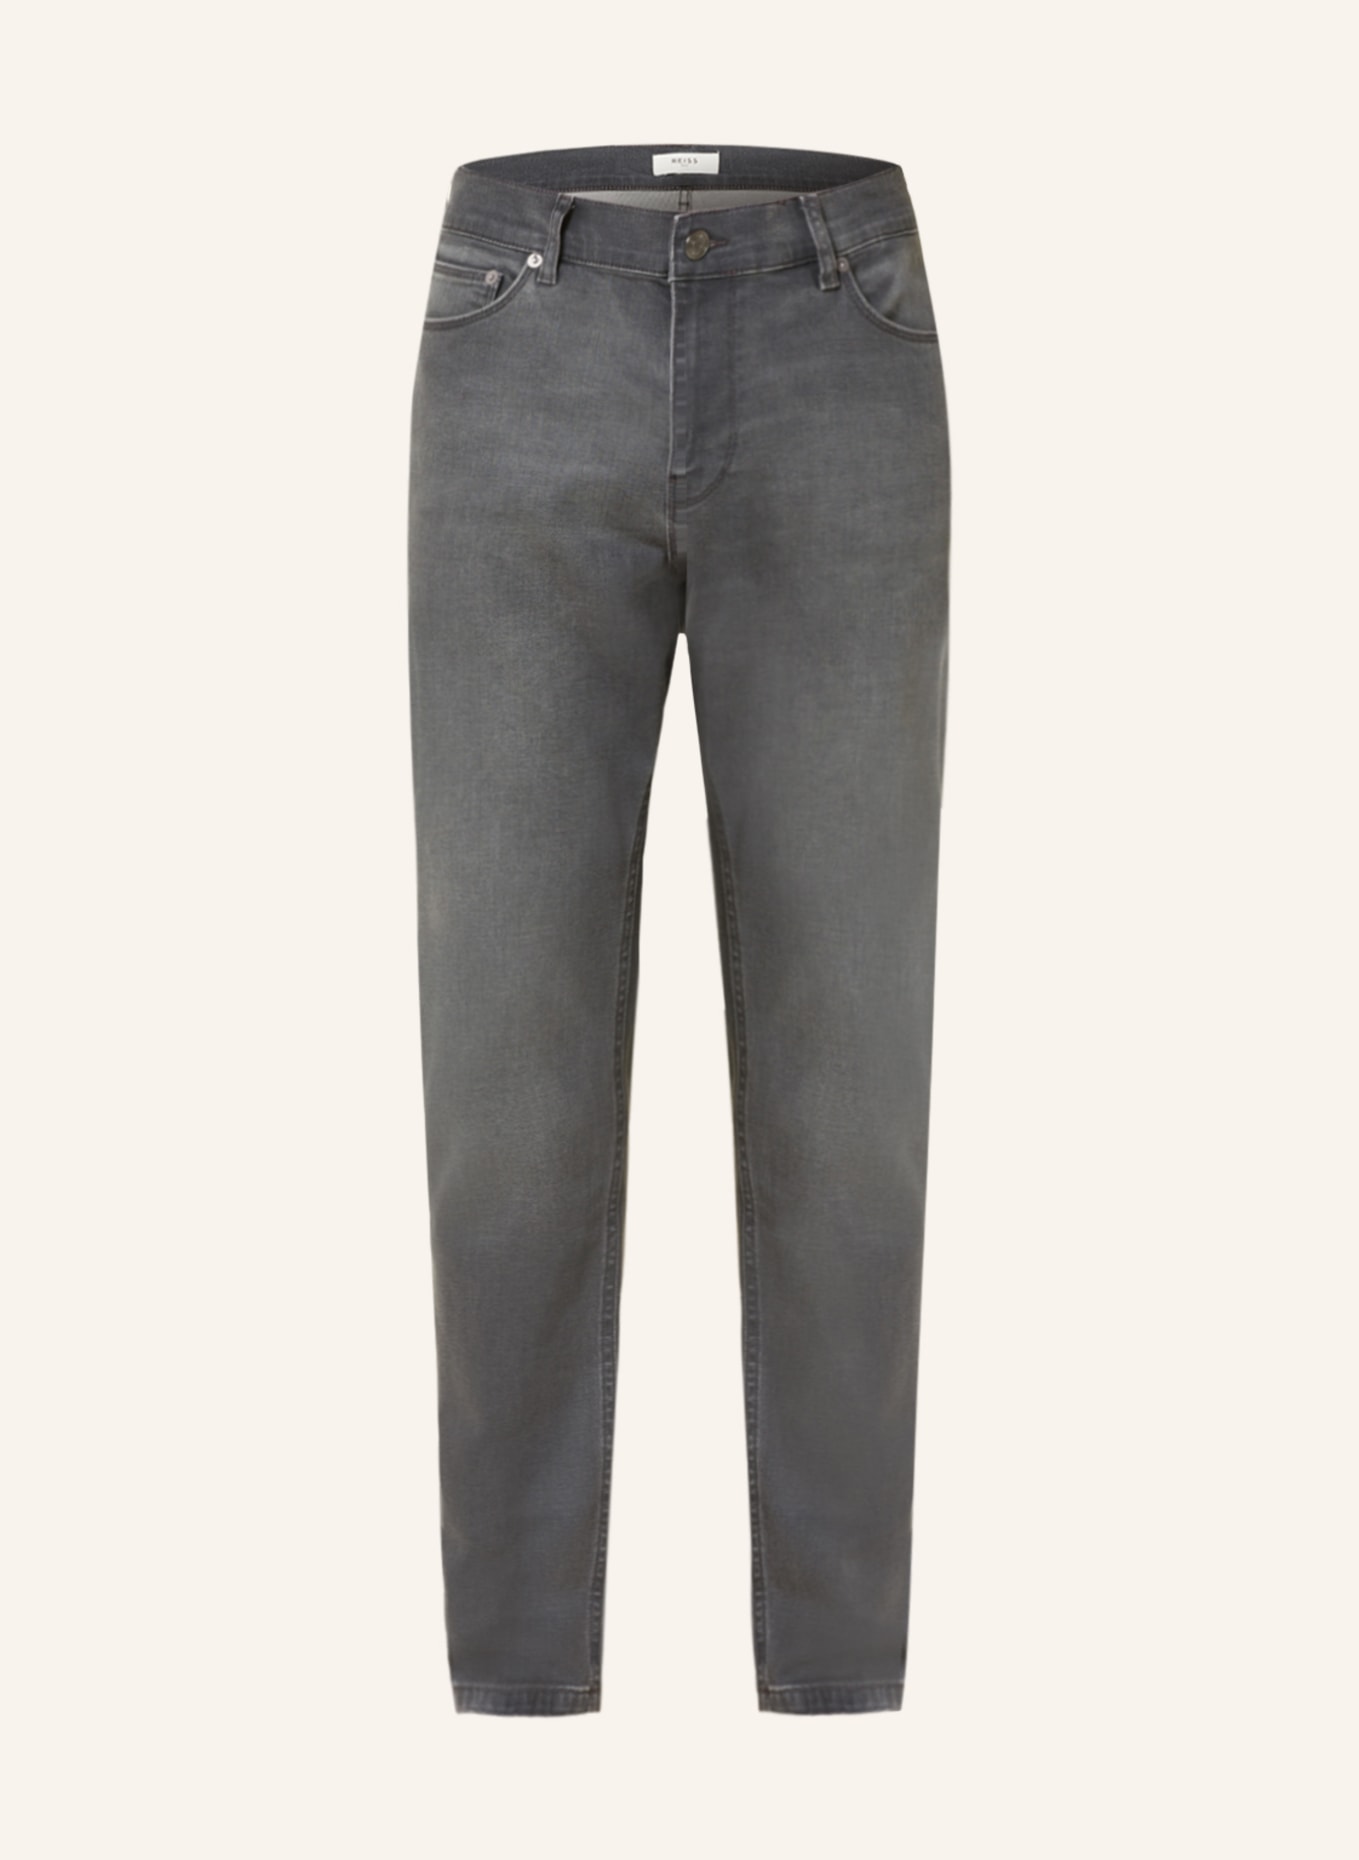 REISS Jeans ROBIN Slim Fit, Farbe: GRAU (Bild 1)